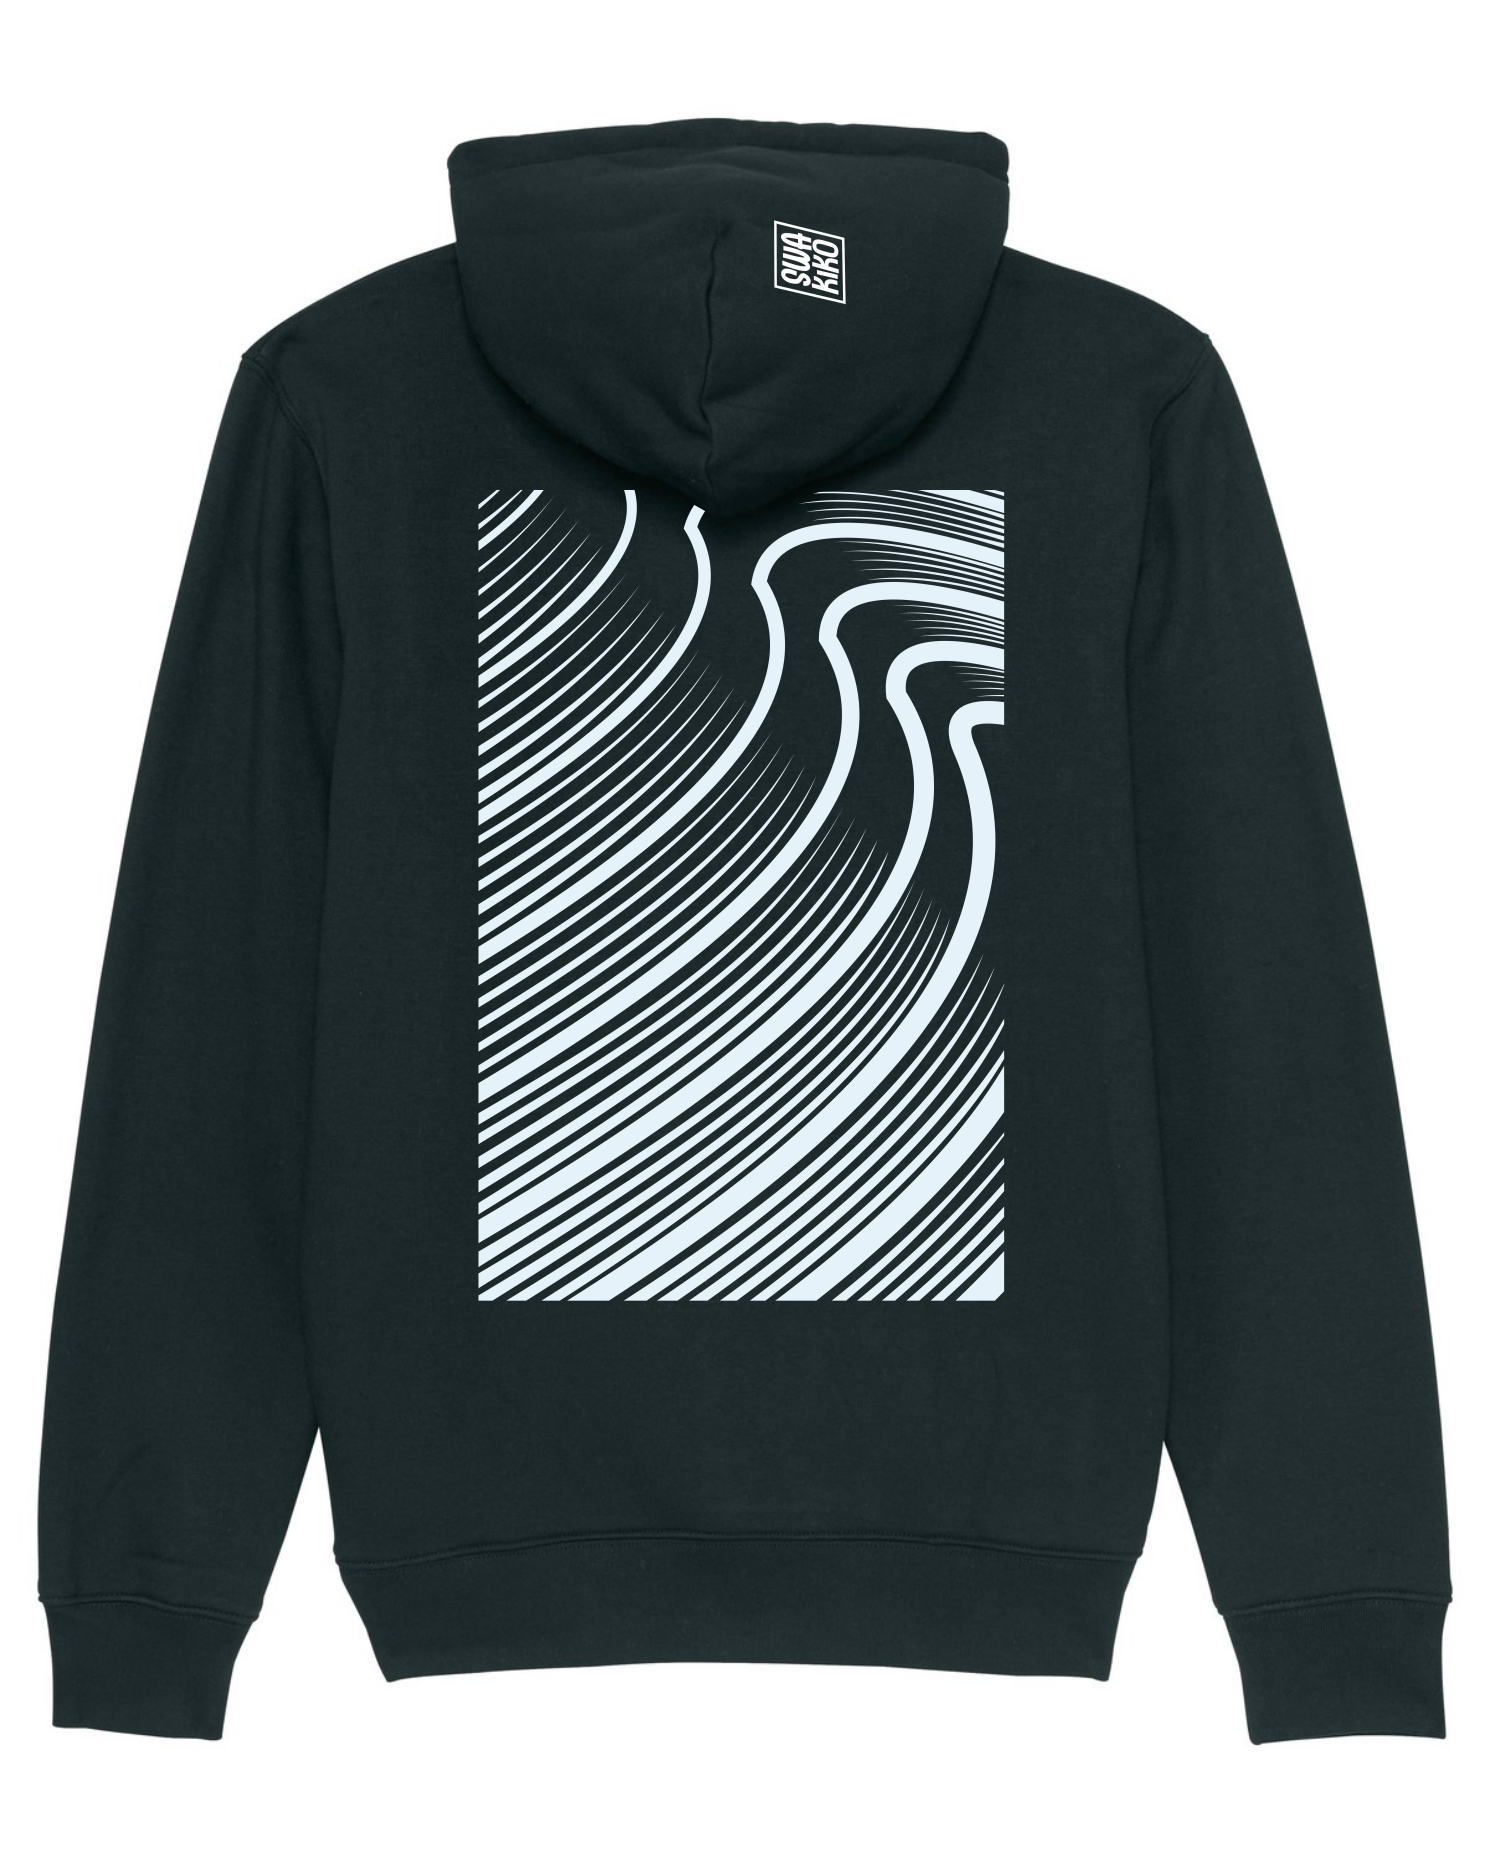 Zwarte hoodie met een artistieke, abstract artwork van golven 